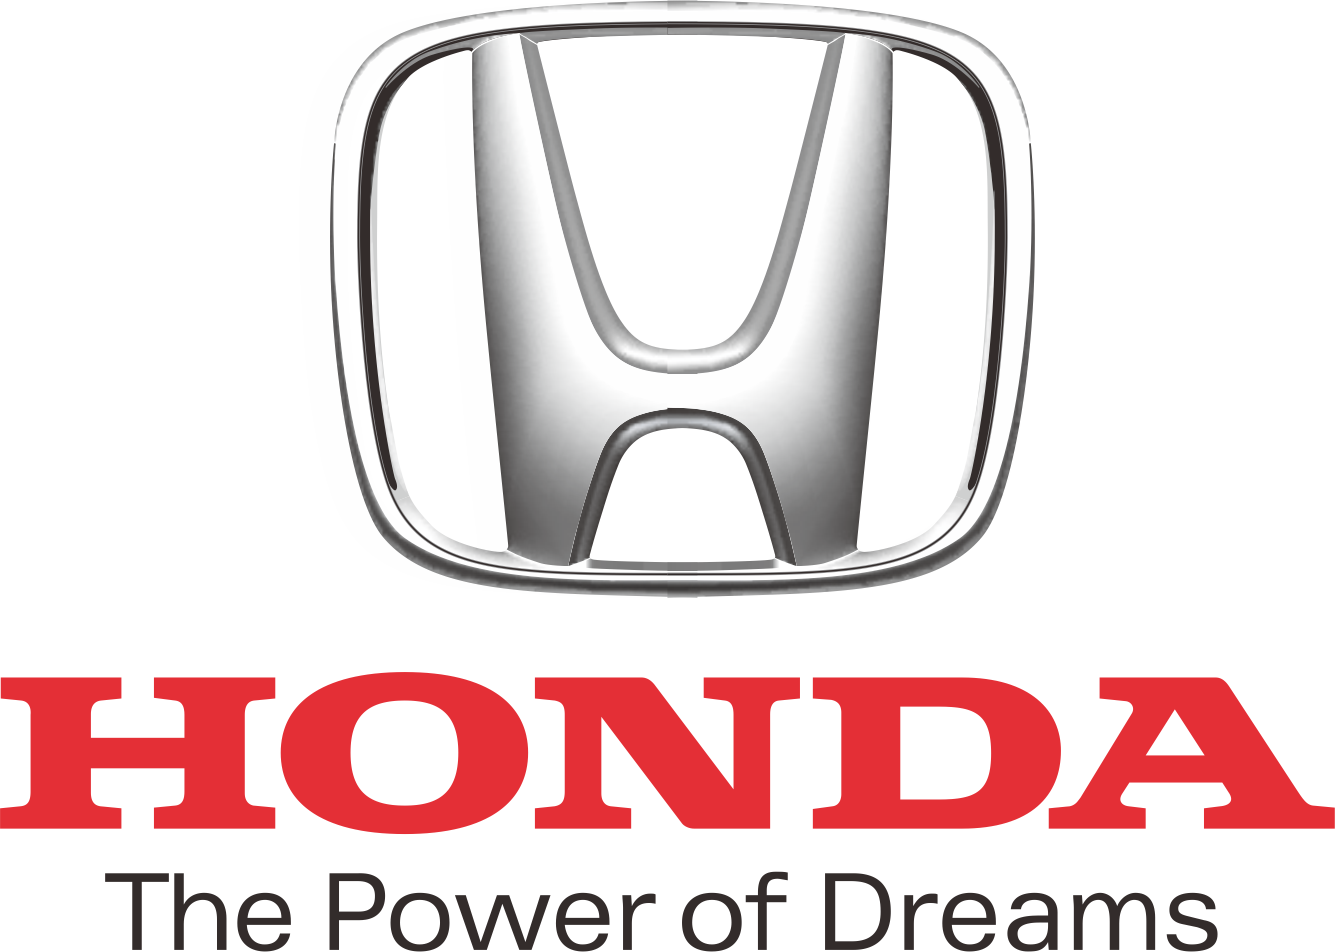 Promo Honda CR-V